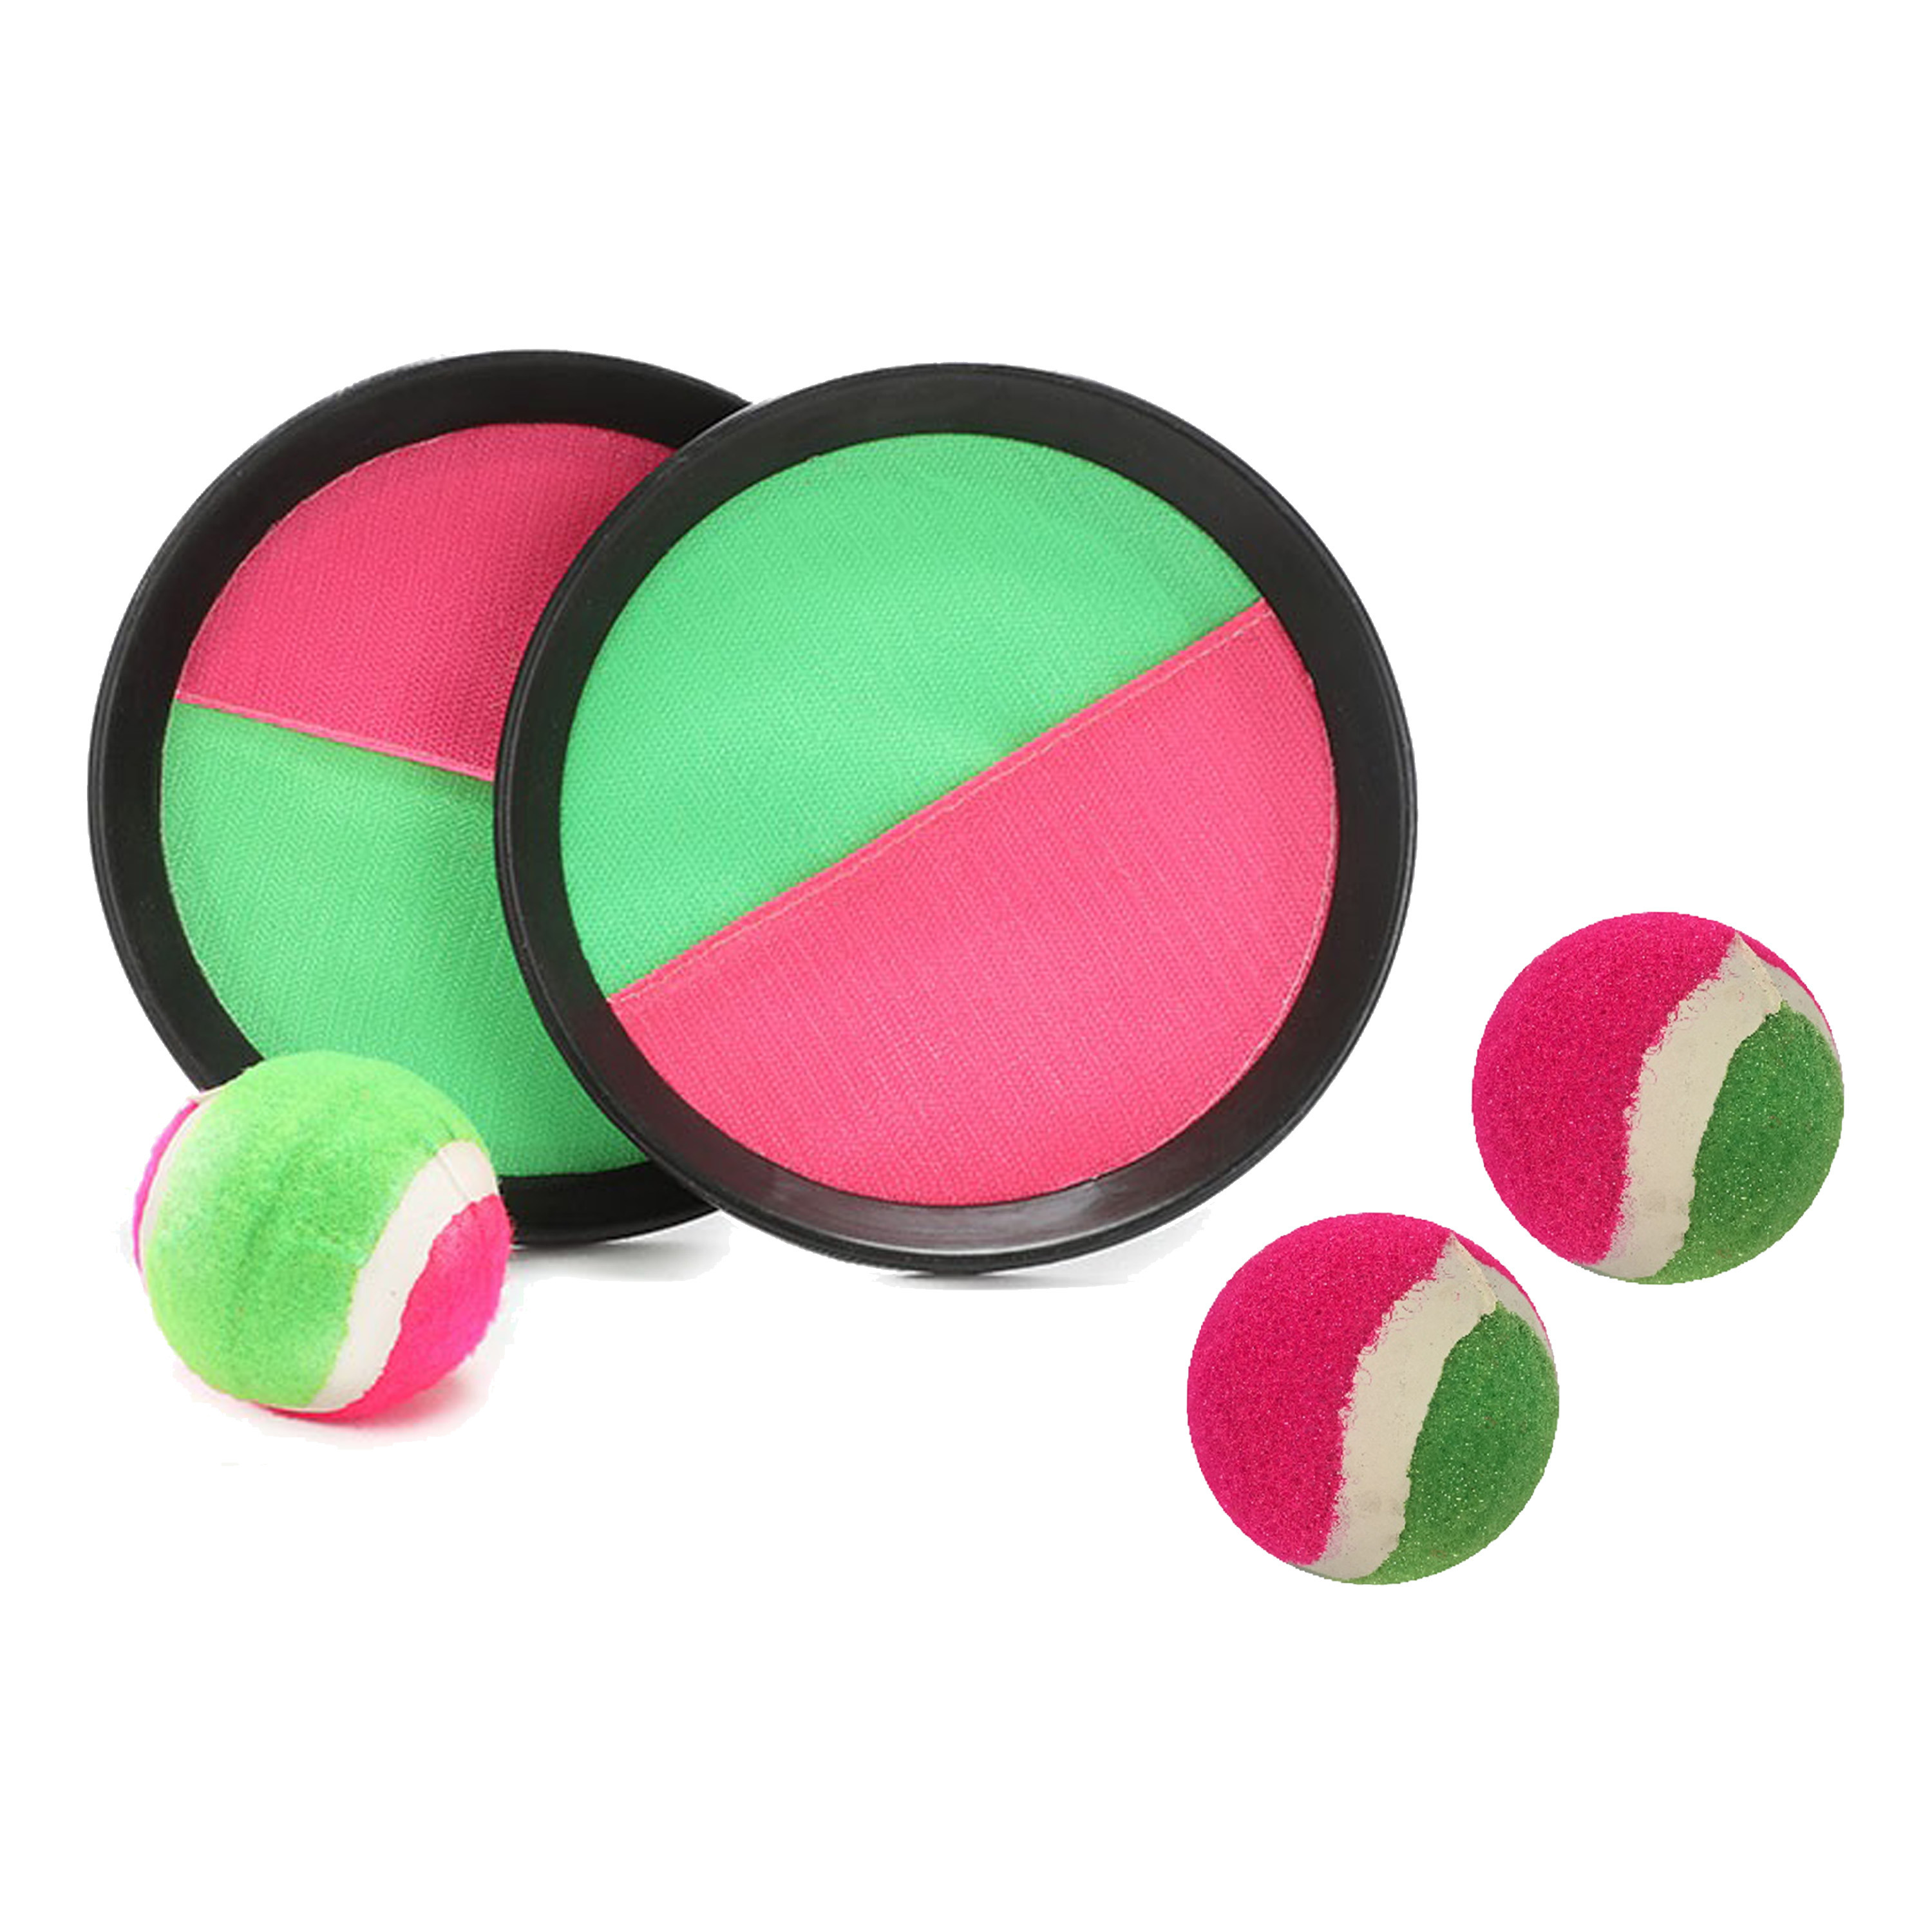 Vangbalspel met klittenband - groen/roze - 2 schilden en 3 balletjes - buiten/strand spellen -